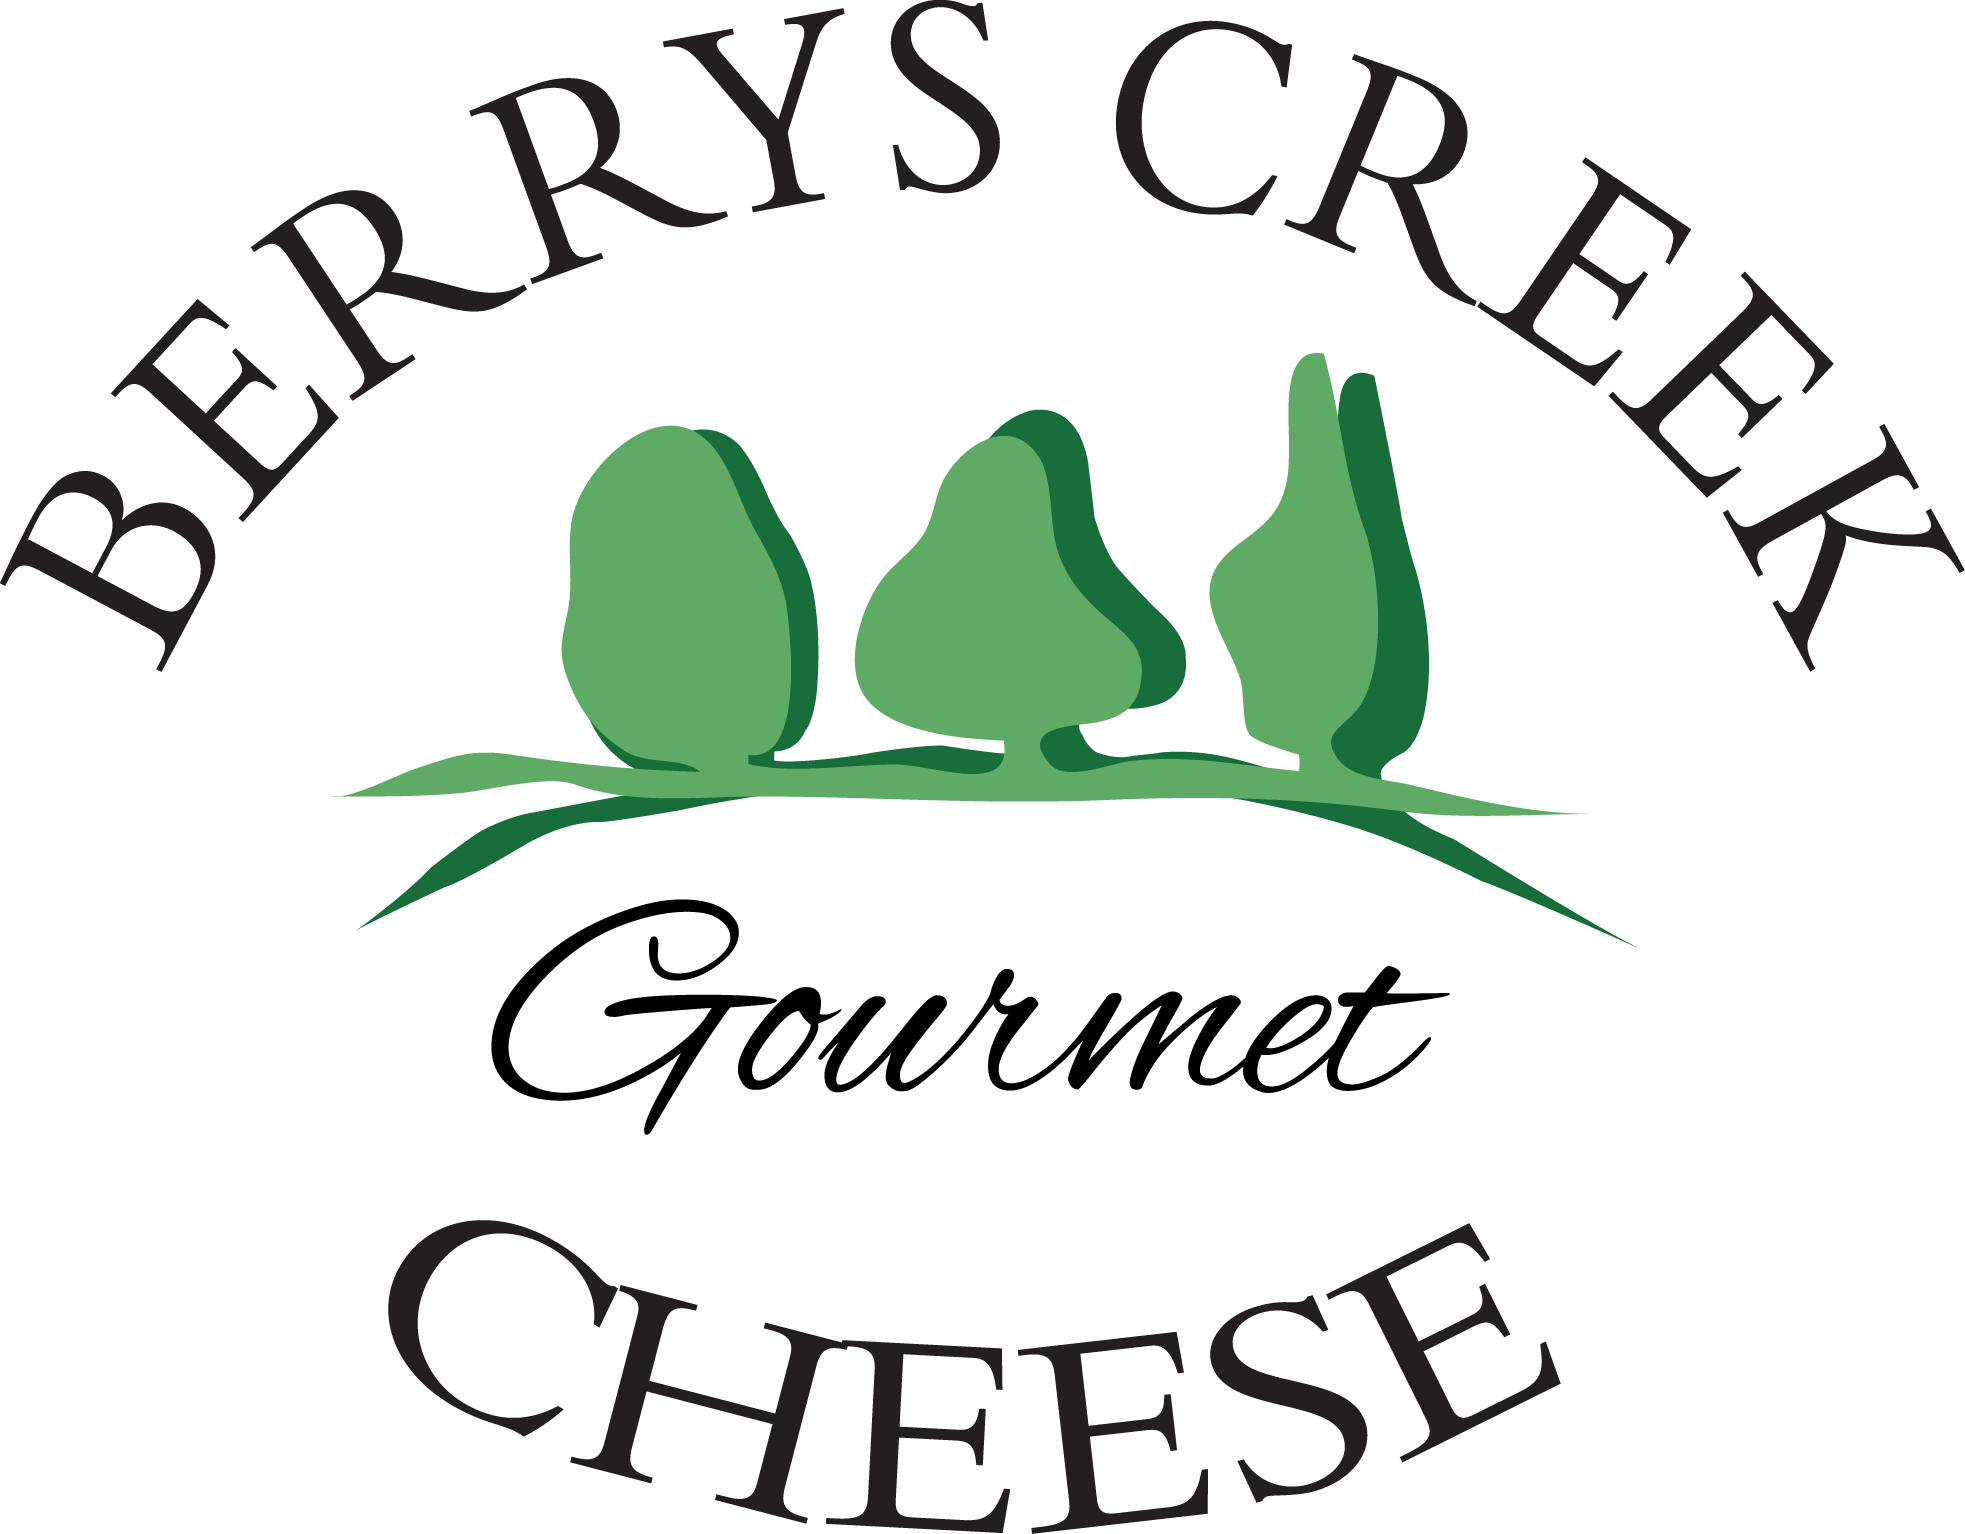 Berrys Creek Gourmet Cheese